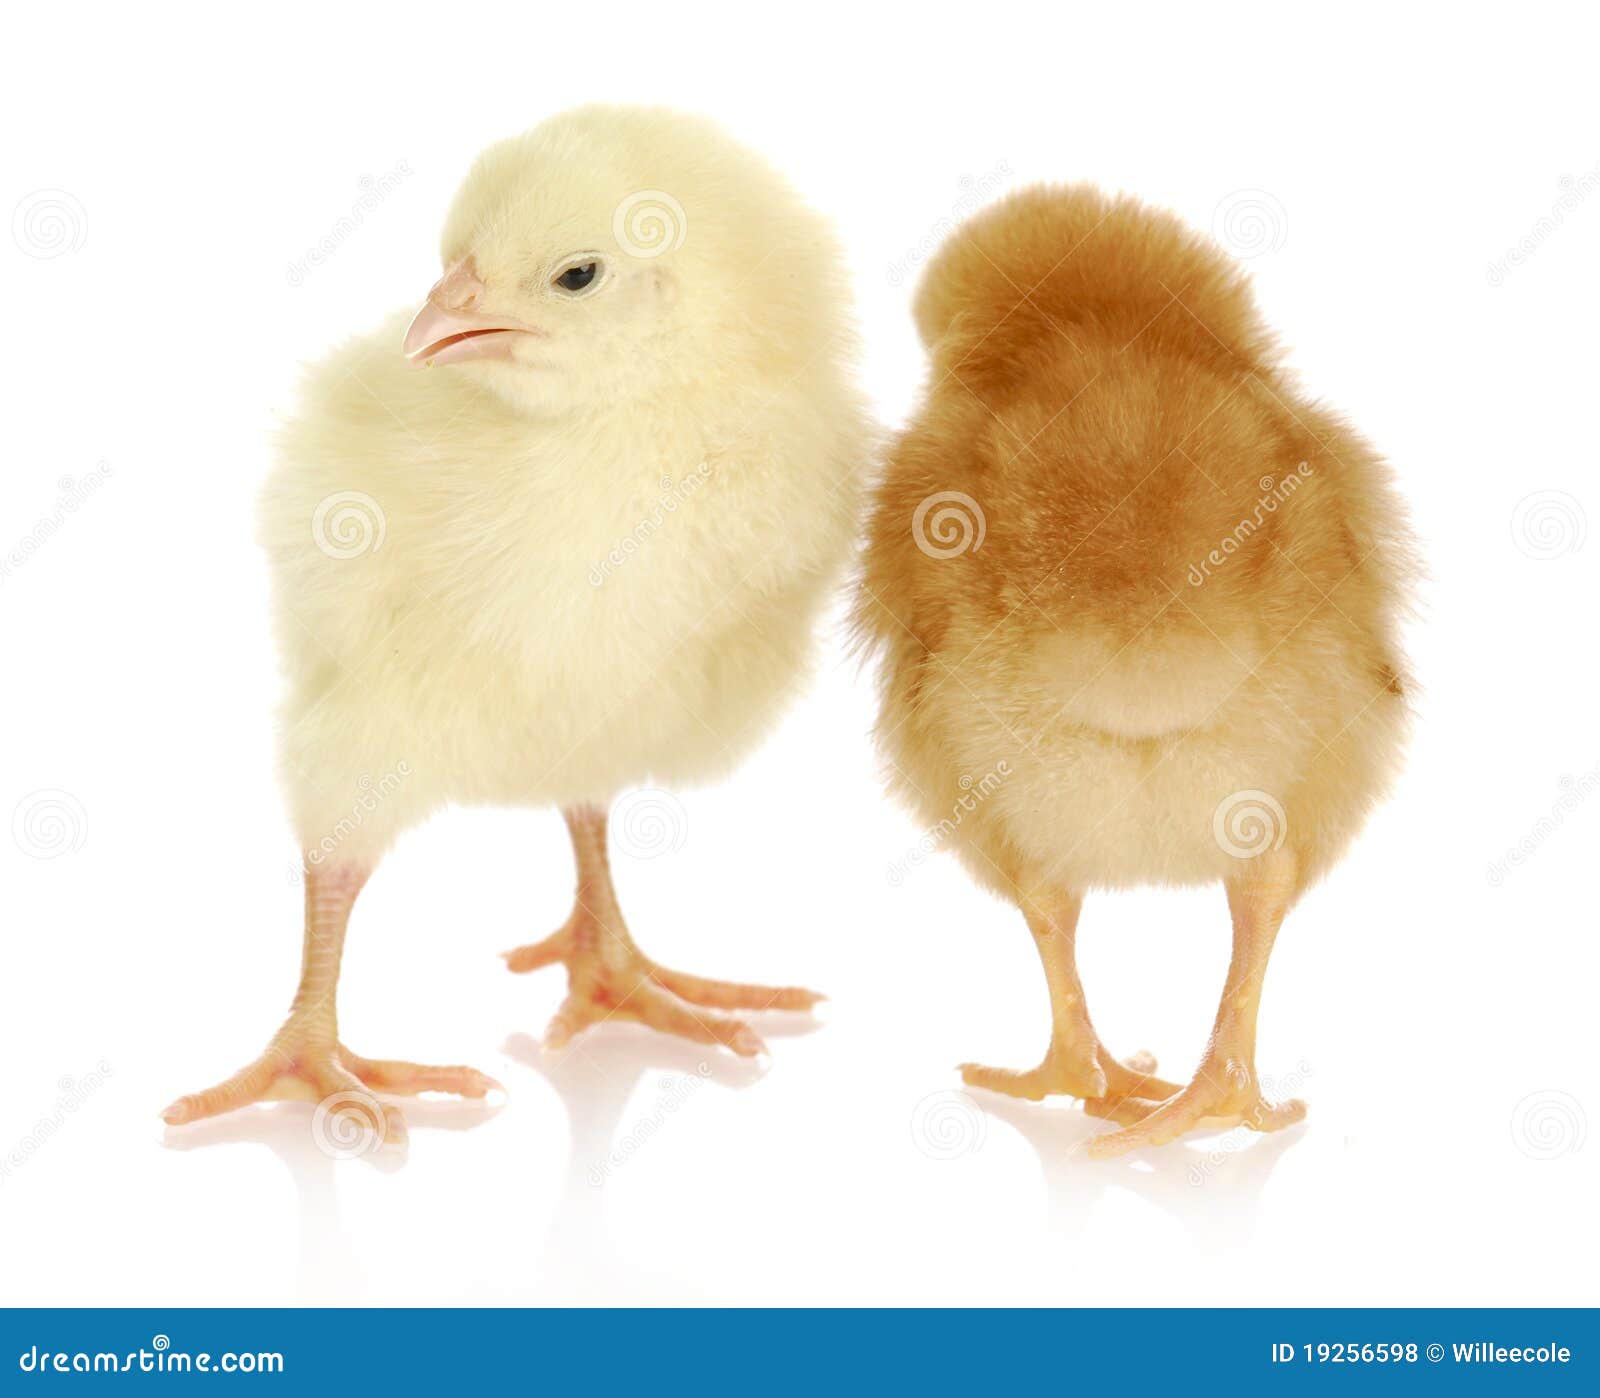 小鸡孵蛋图片大全-小鸡孵蛋高清图片下载-觅知网